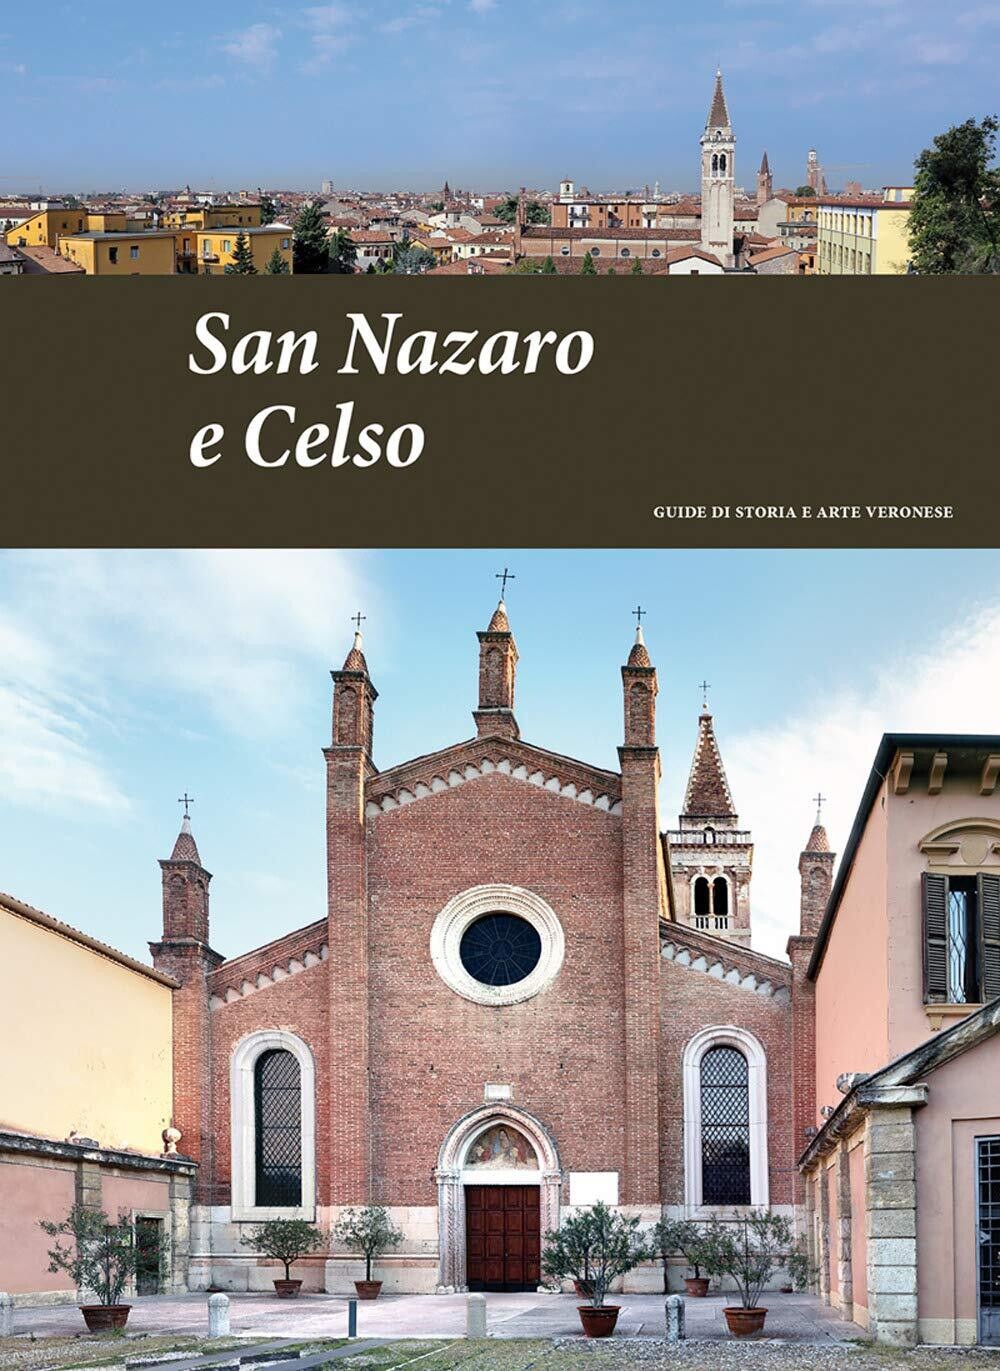 San Nazaro e Celso